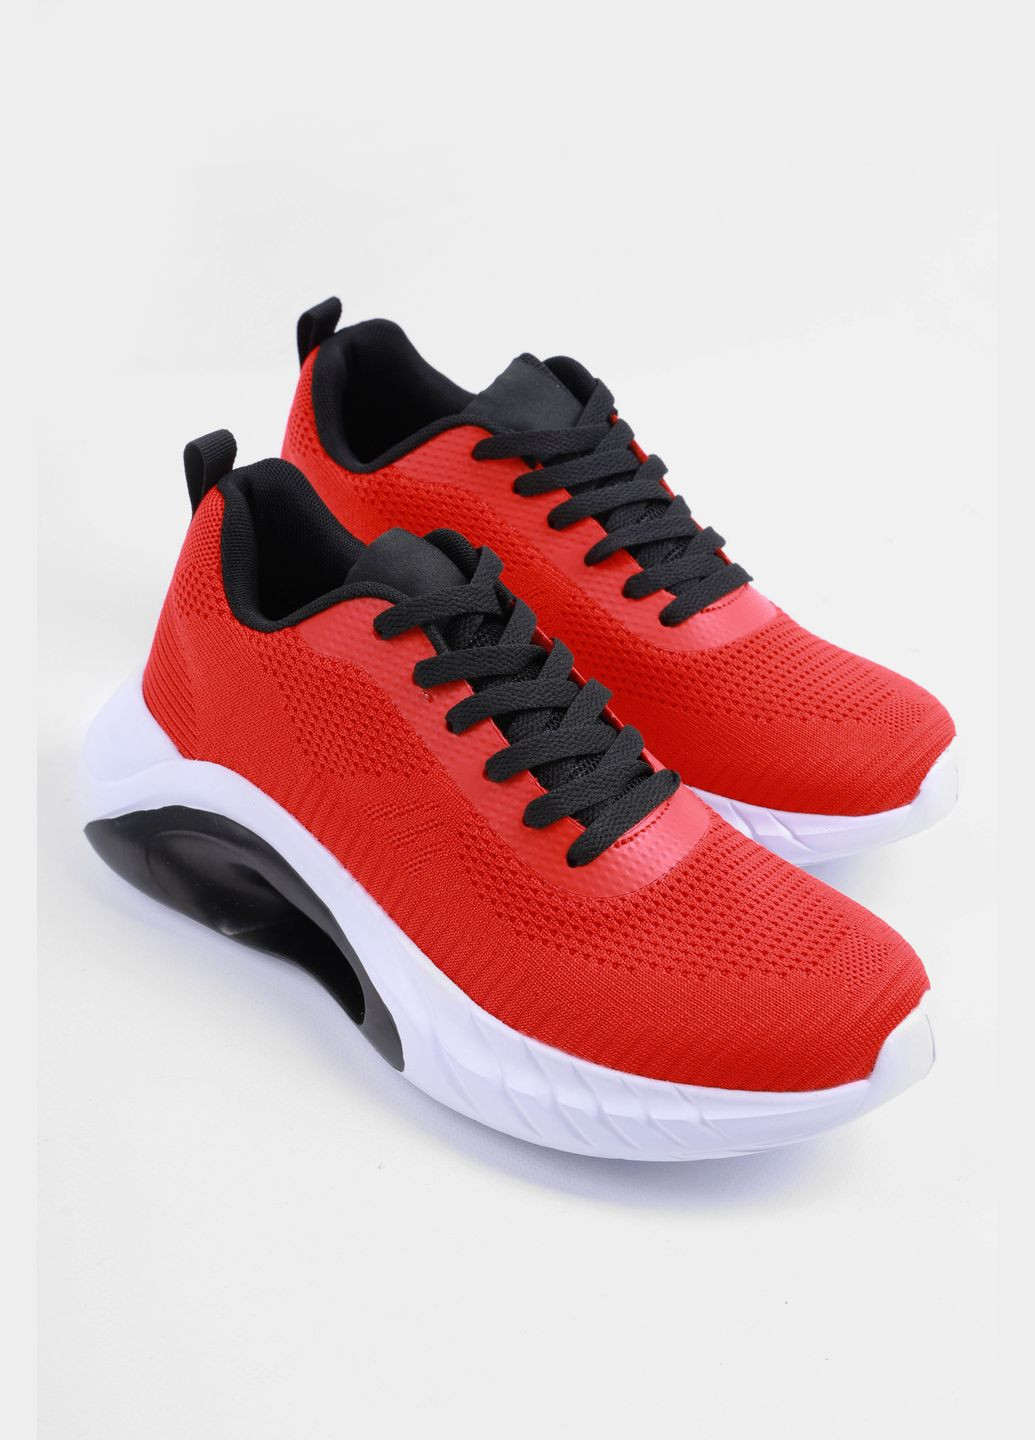 Червоні Осінні кросівки чоловічі червоного кольору на шнурівці Let's Shop